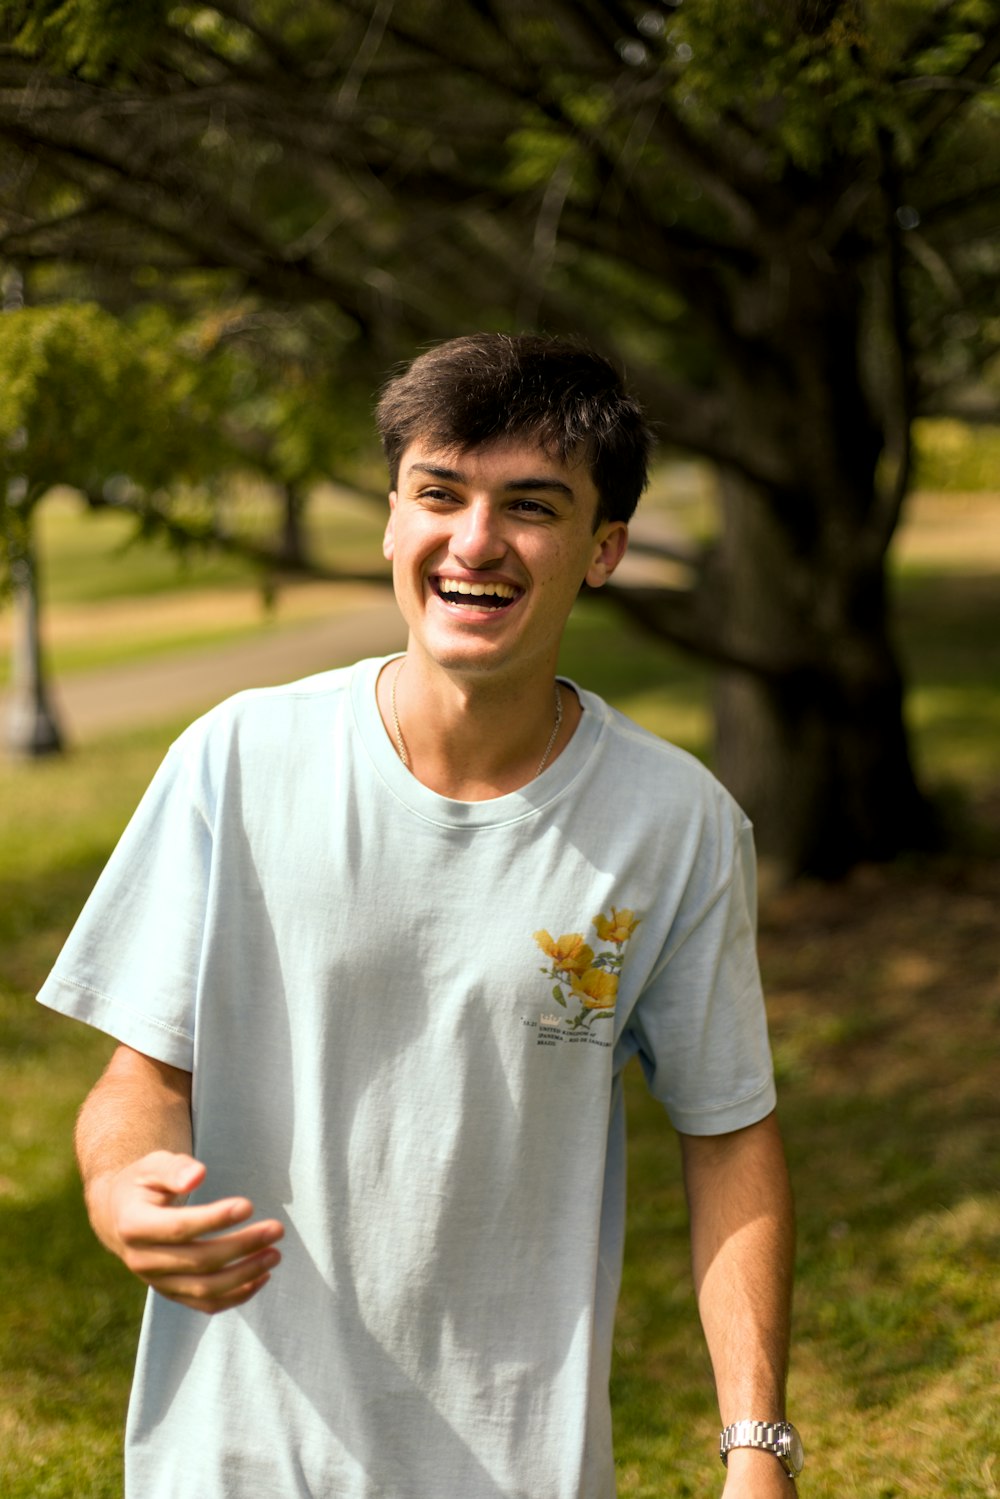 Un giovane sorride tenendo in mano un frisbee